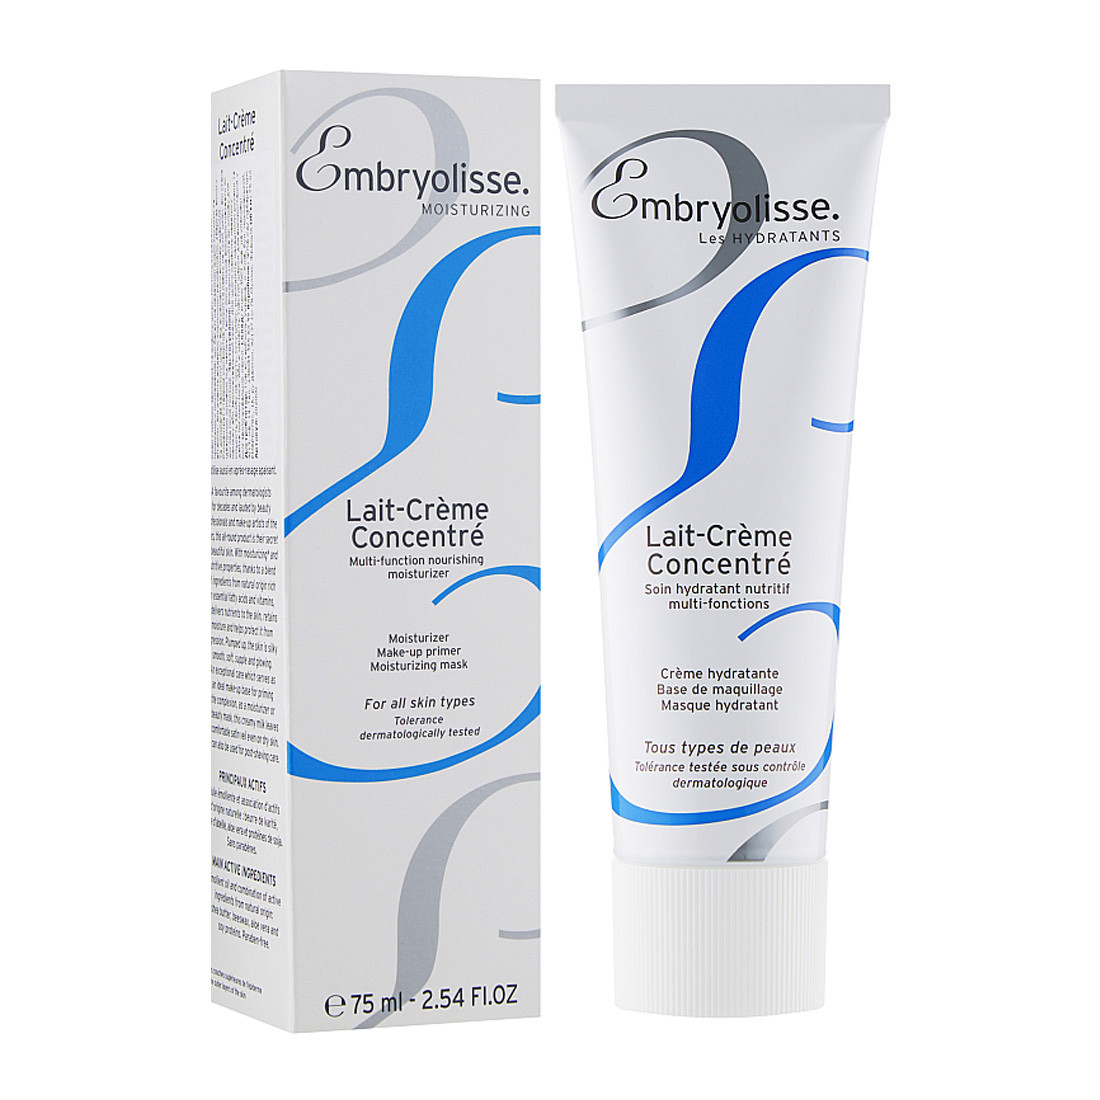 Мультизащитный увлажняющий крем Embryolisse Lait-Crème SPF 20